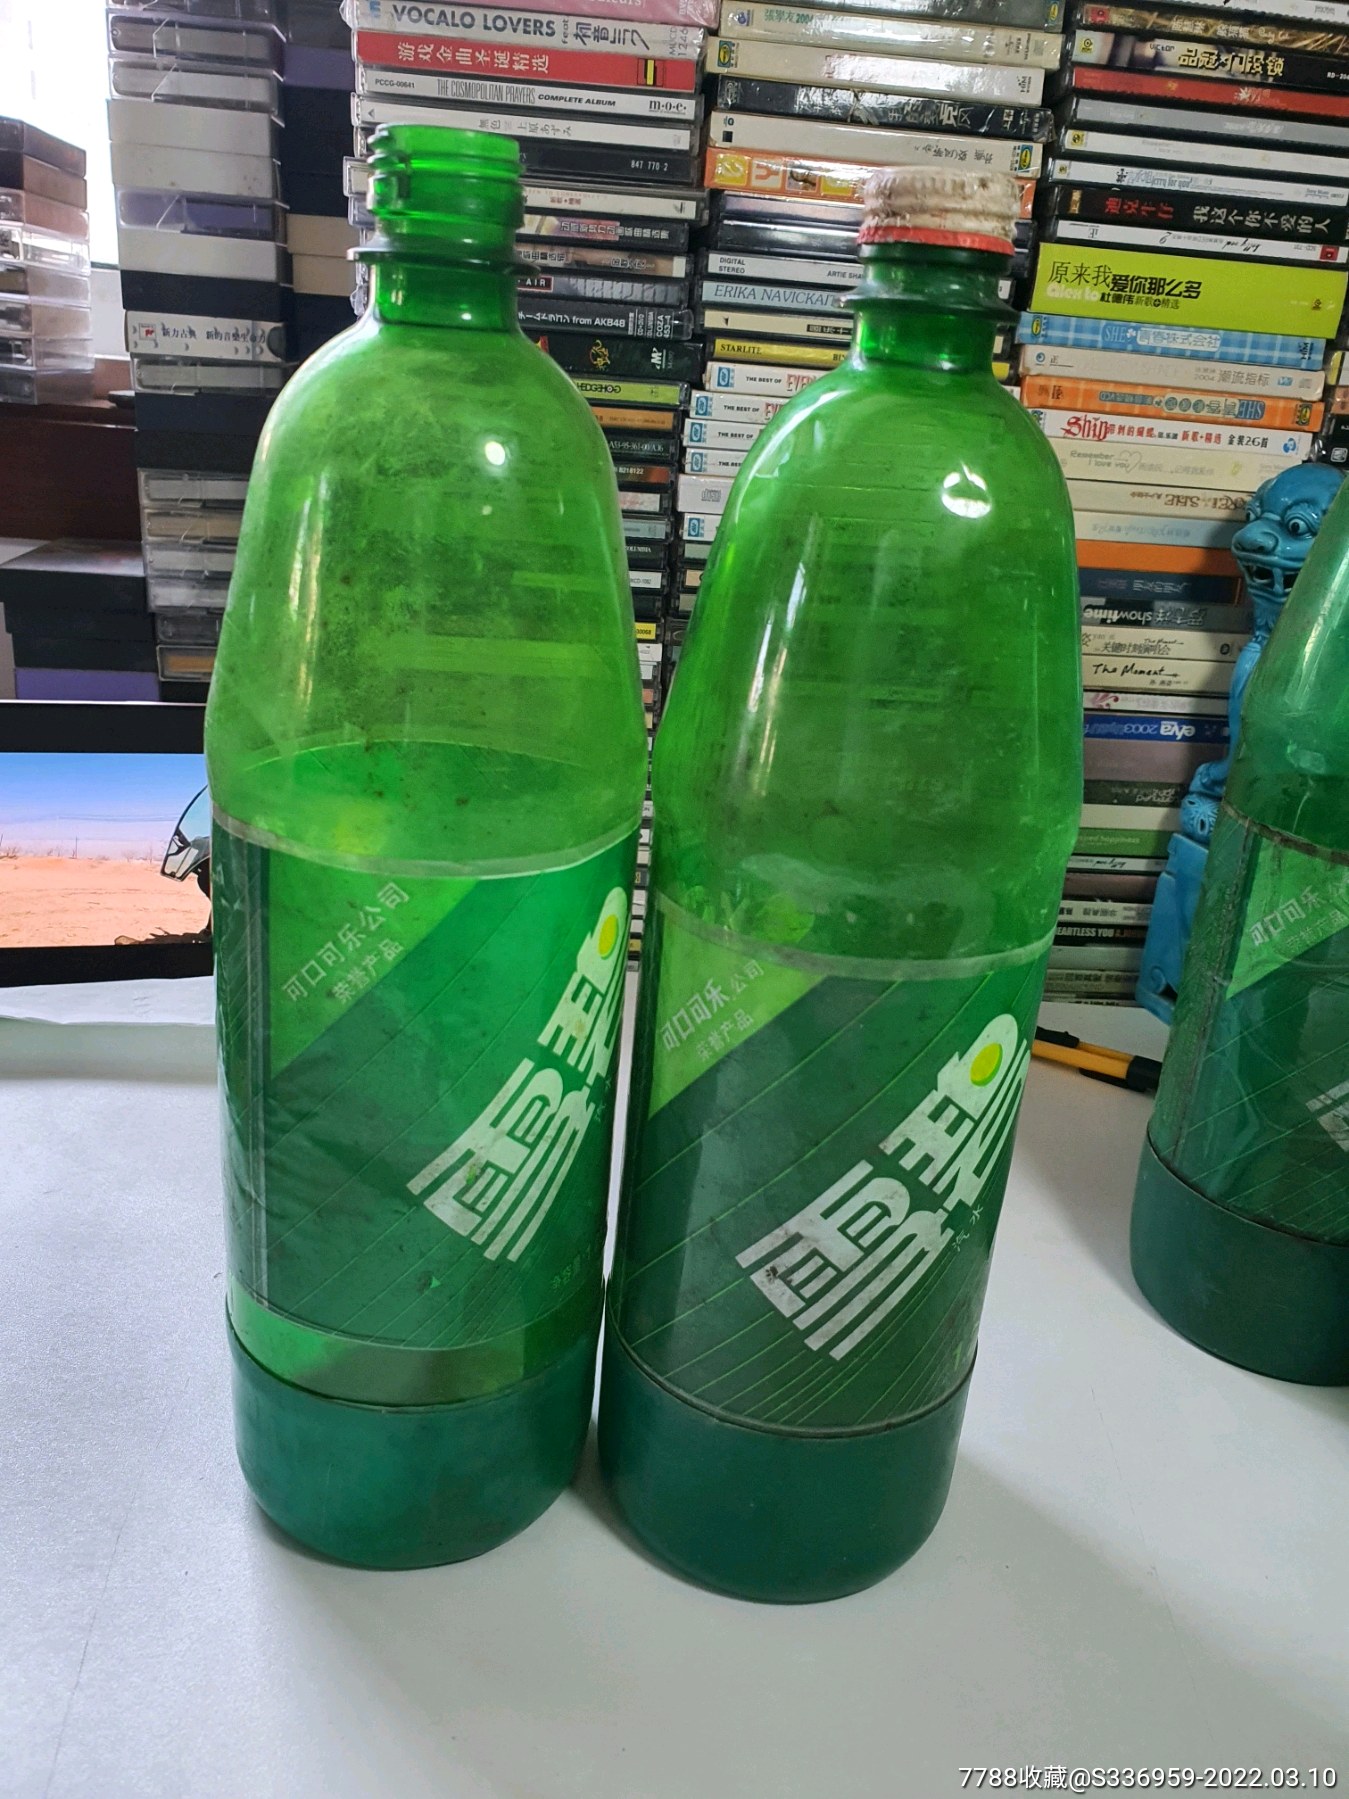 雪碧饮料瓶子九十年代